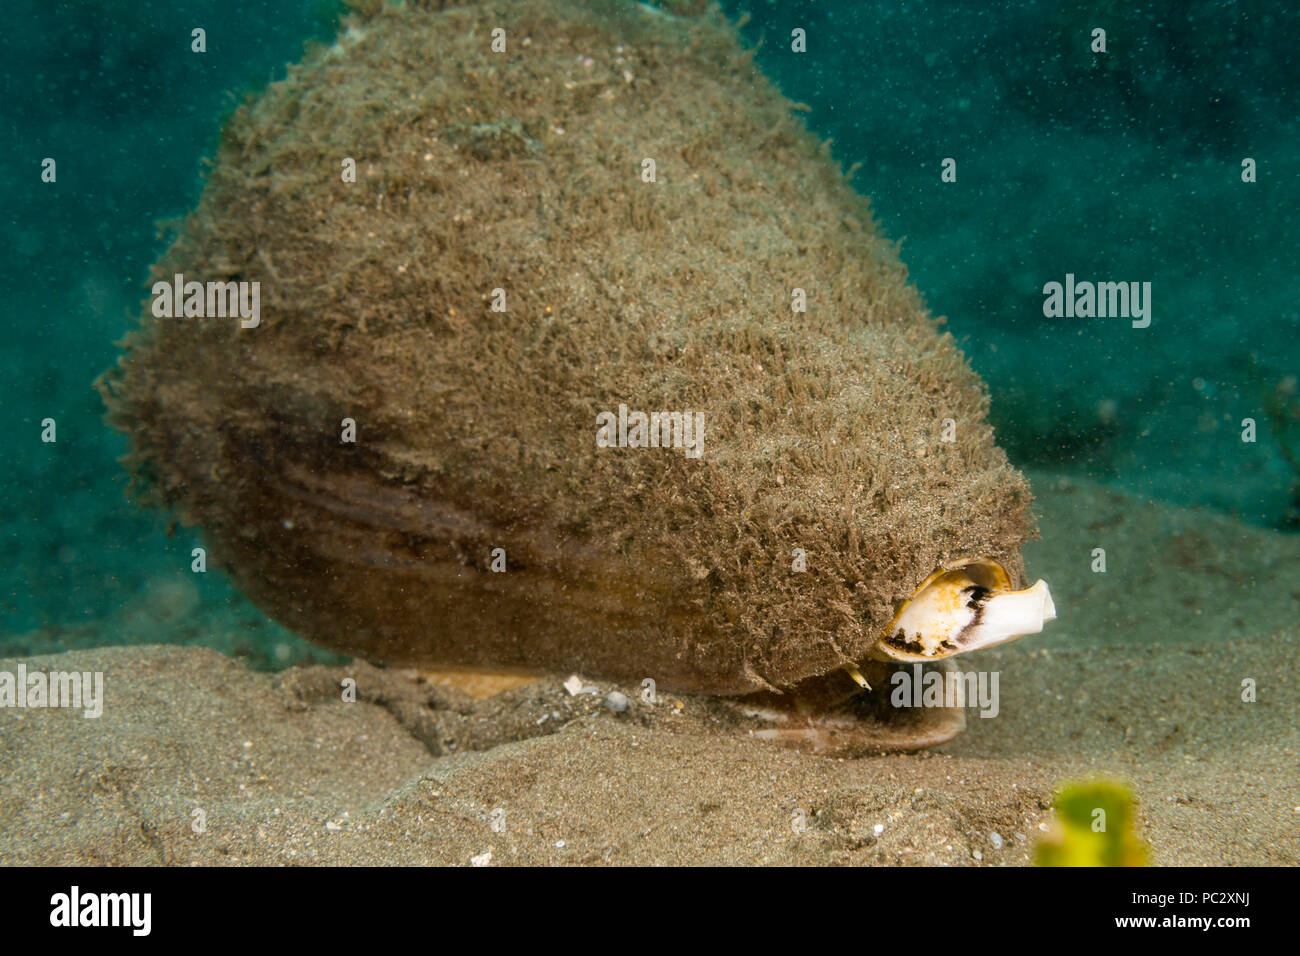 Il cono di leopard, Conus da leopardo, è un marine mollusco gasteropode della famiglia Conidae. È il più grande di questa famiglia si trovano in acque Hawaiiane dove Foto Stock